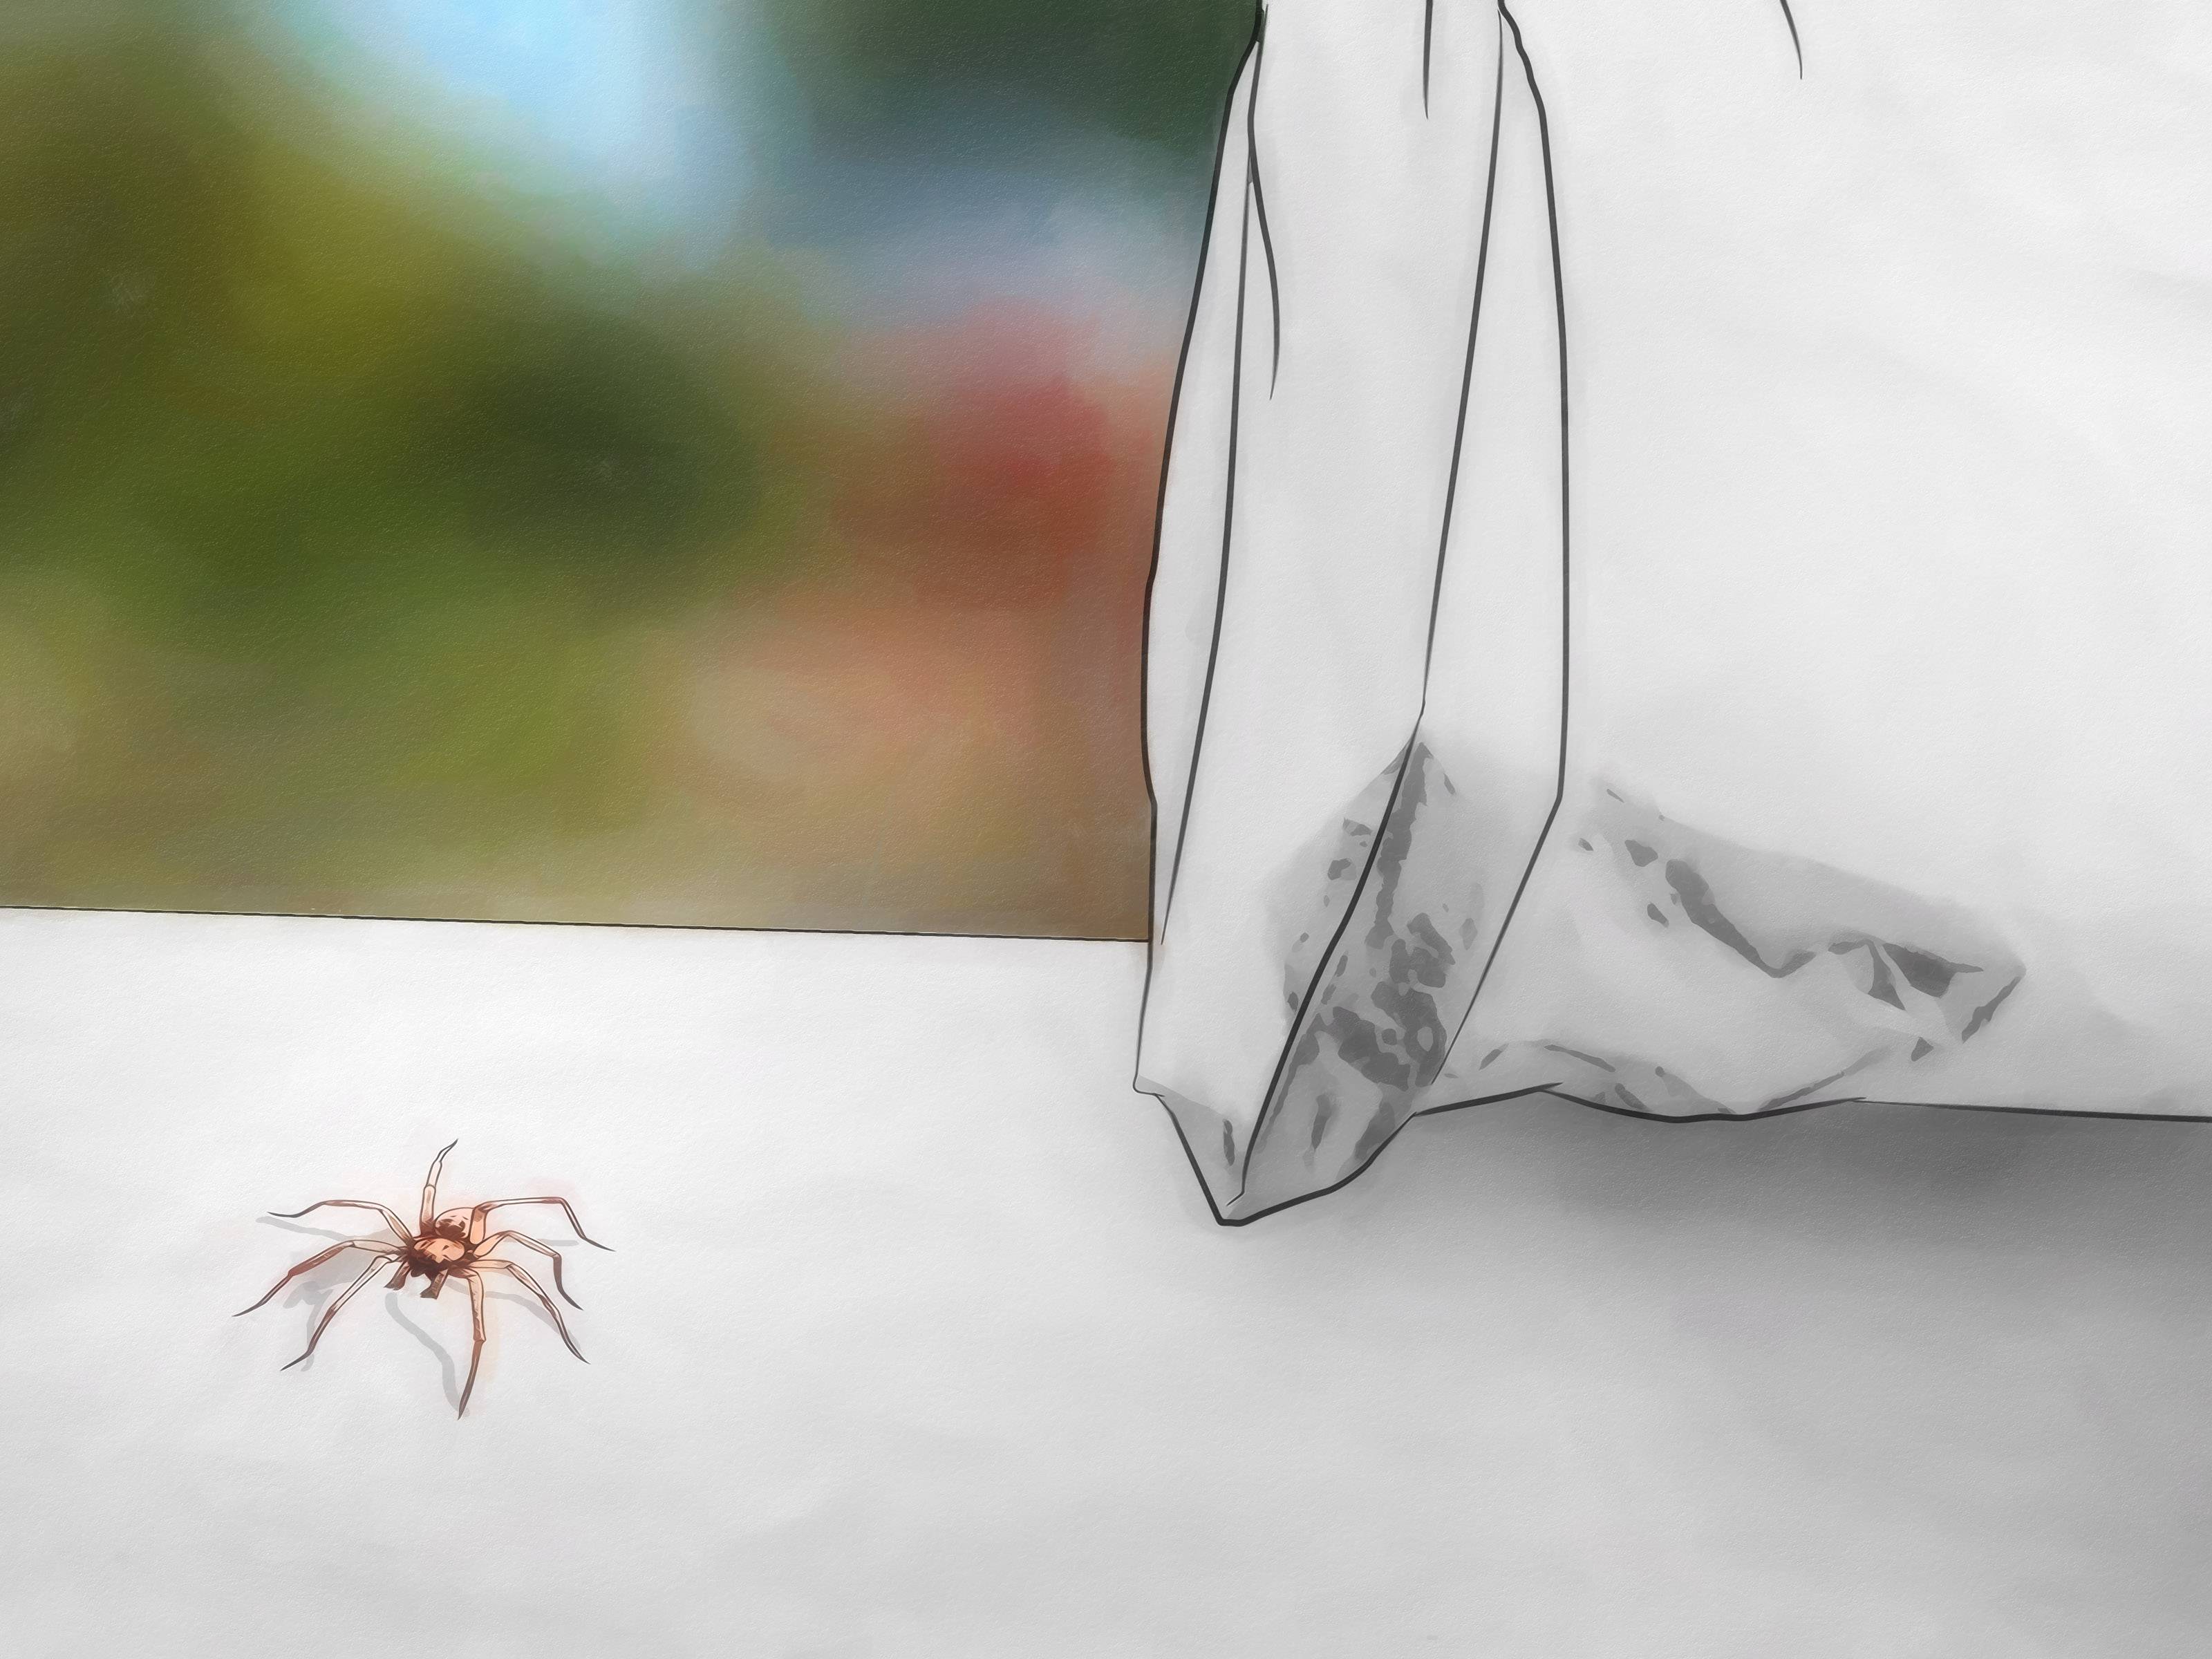 Домашние пауки: какие бывают, чем питаются в квартире и сколько живут, почему появляются в доме